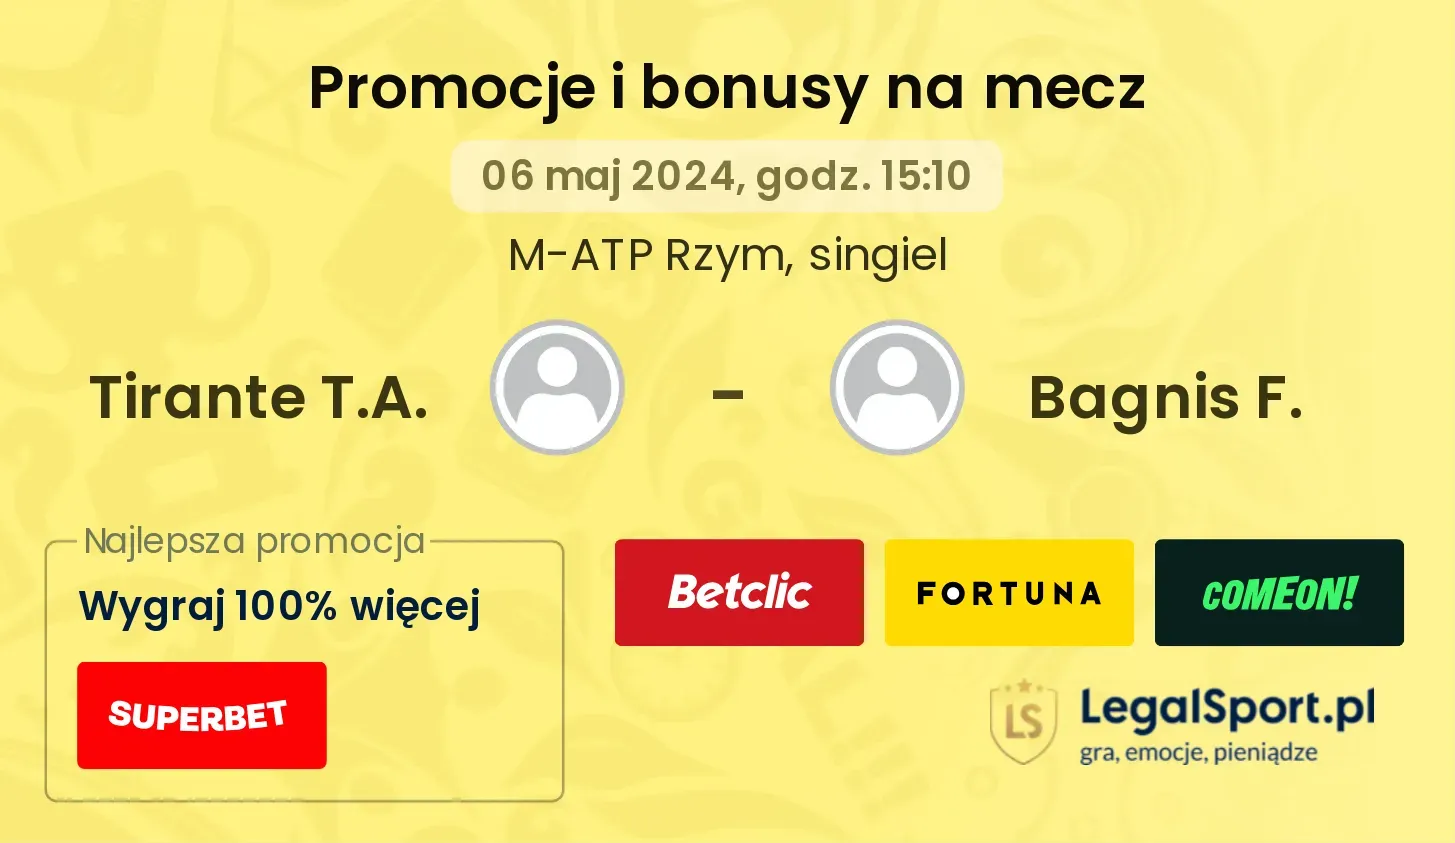 Tirante T.A. - Bagnis F. promocje bonusy na mecz